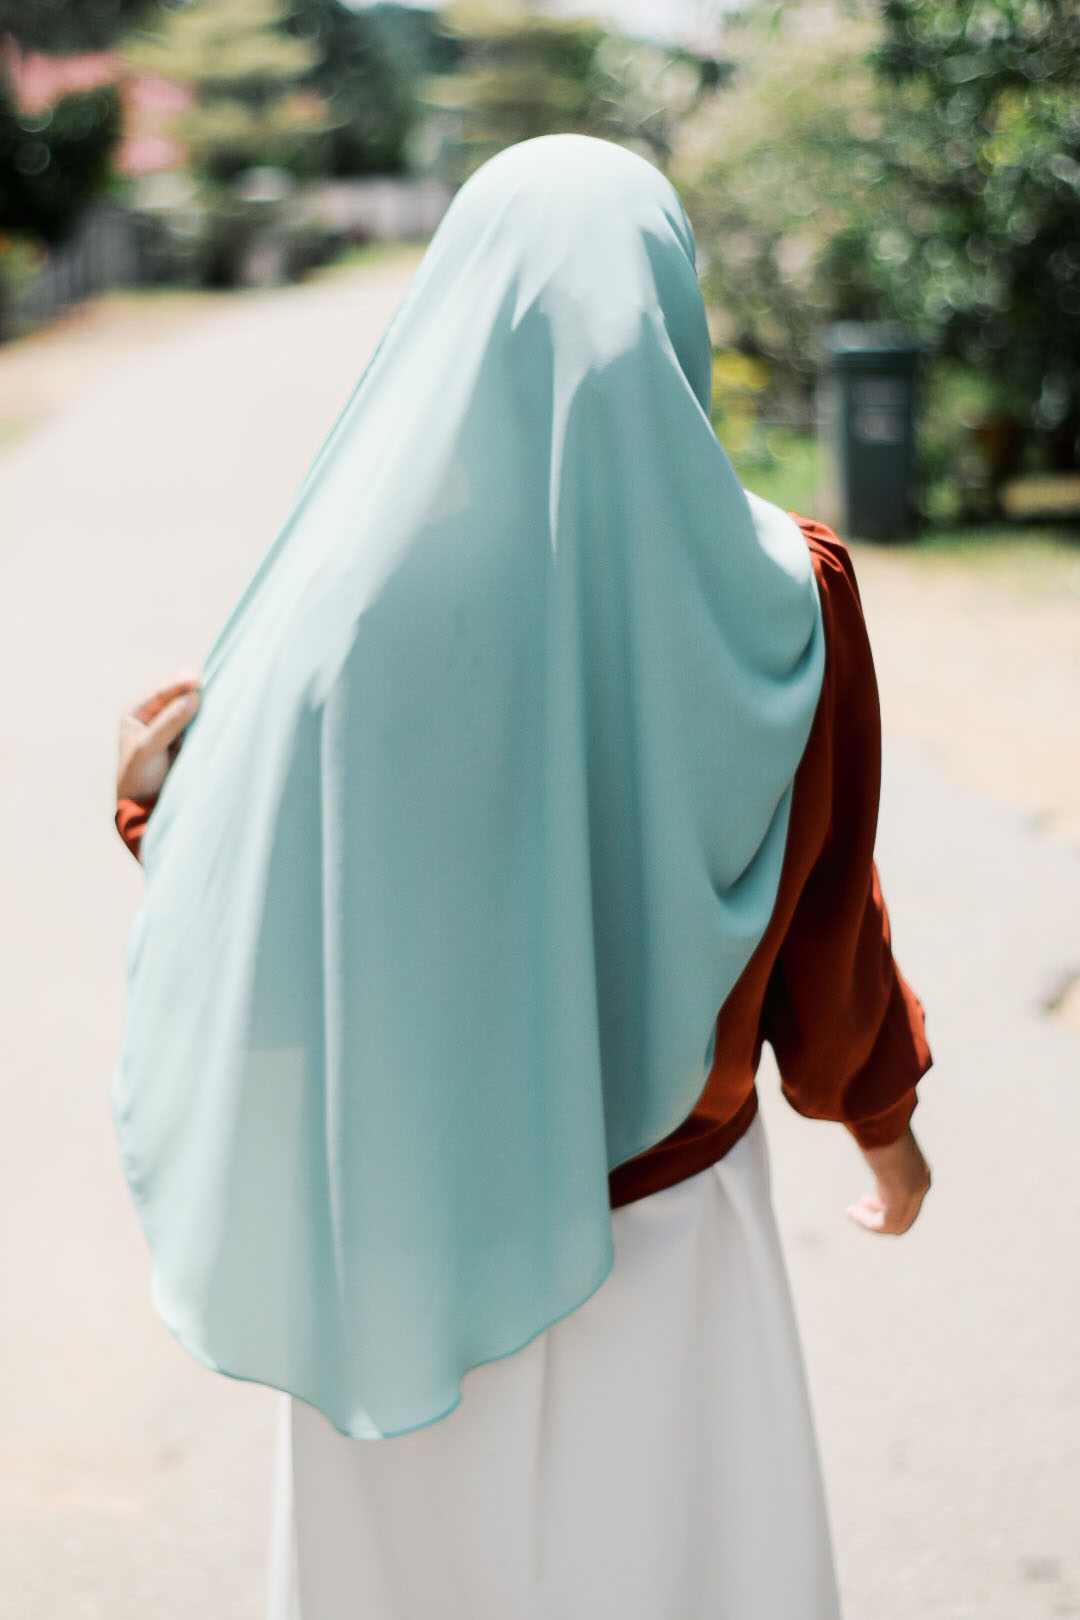 Marhuna Tampil Dengan Rekaan Hijab Shawl Berbentuk Pensel Pertama di Malaysia